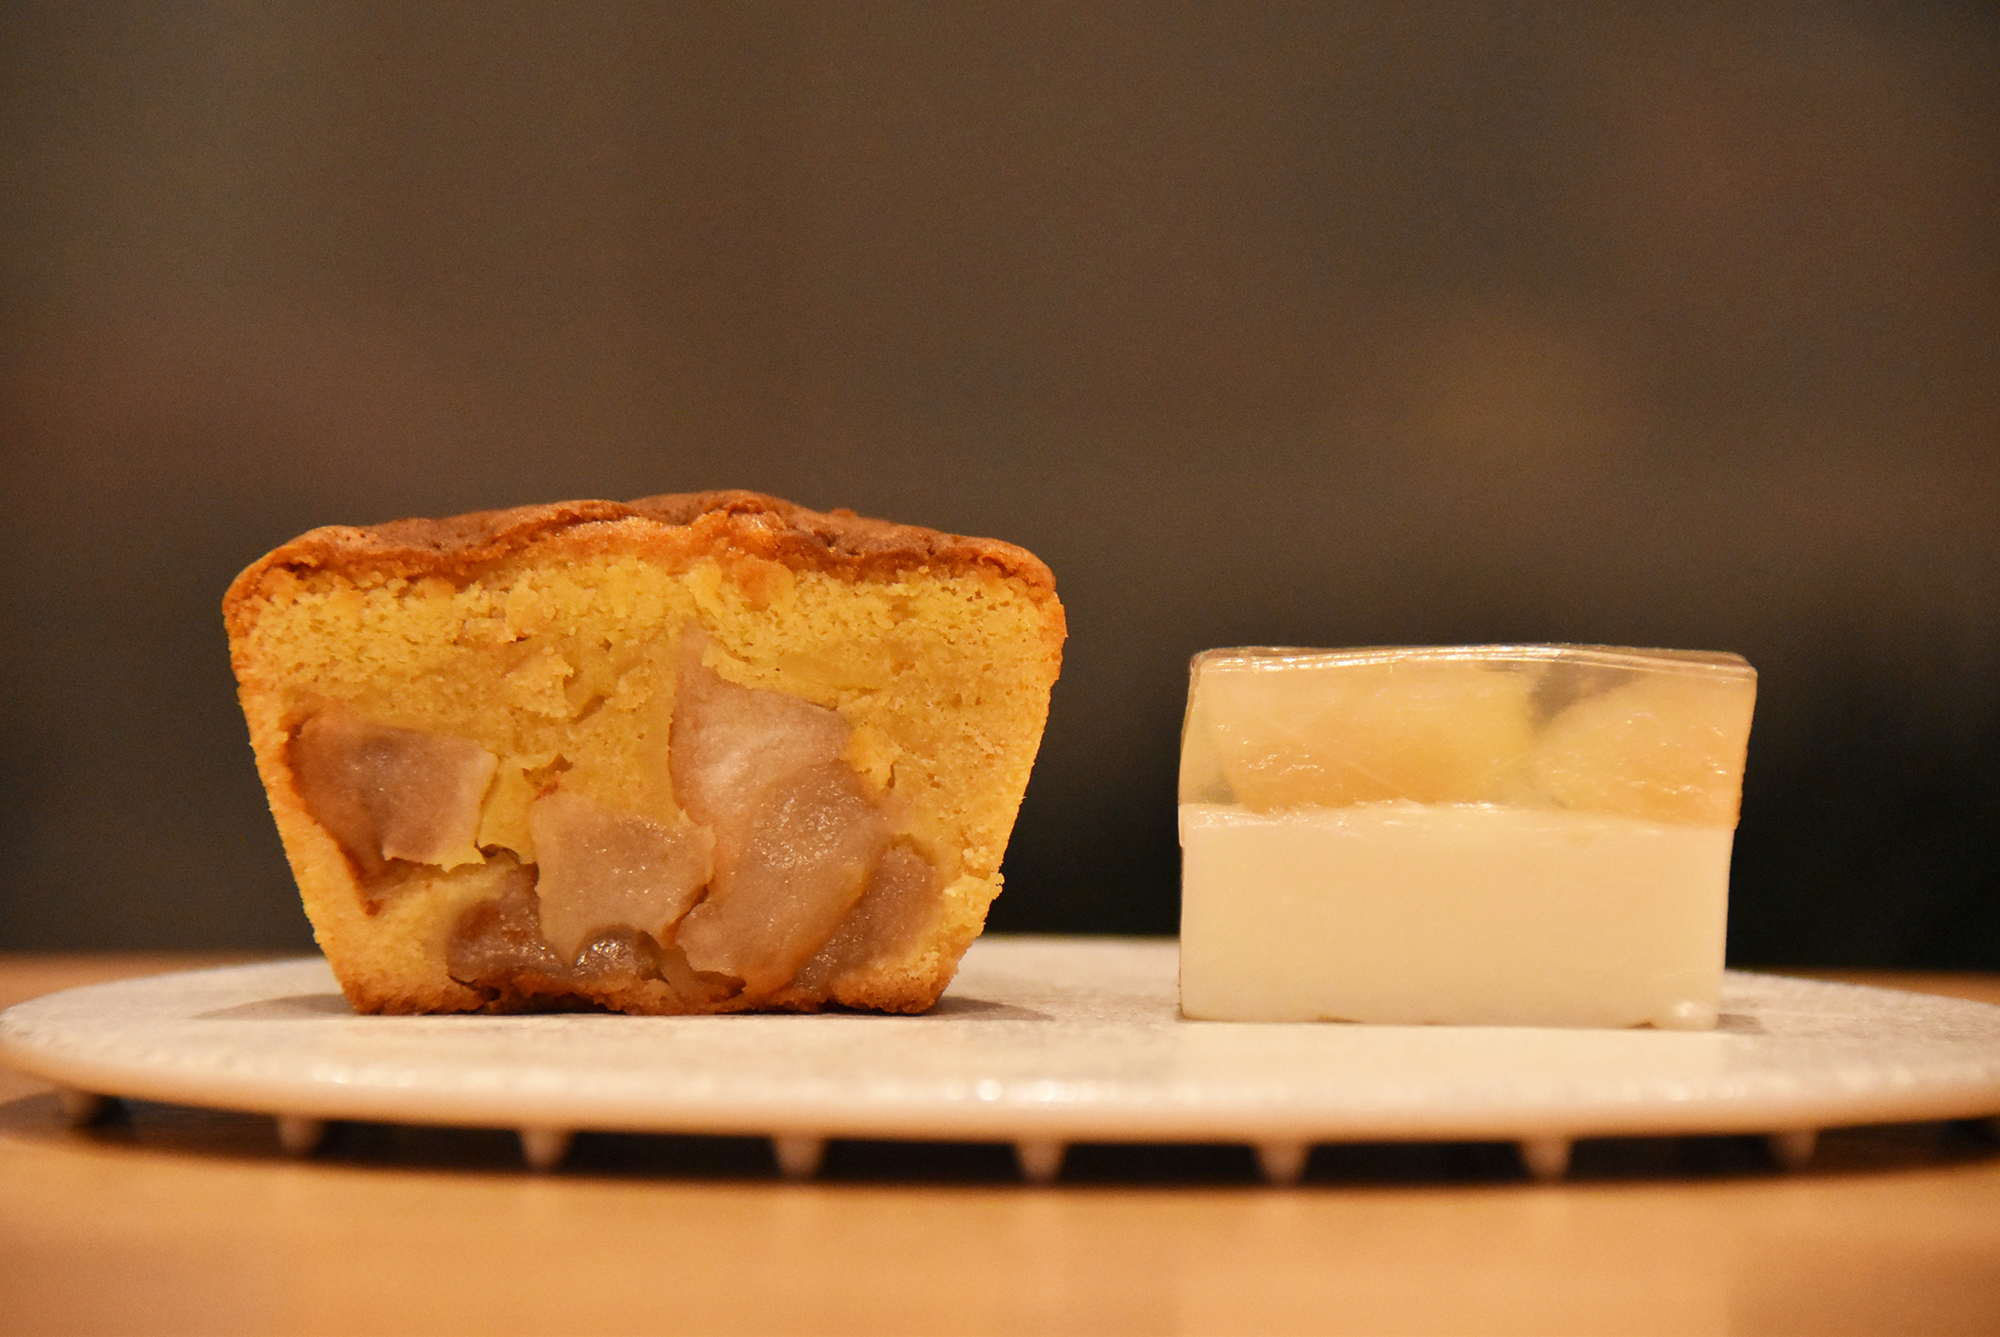 梨とクリームチーズの羊羹 7481／梨とシナモンのケーキ 7051の画像